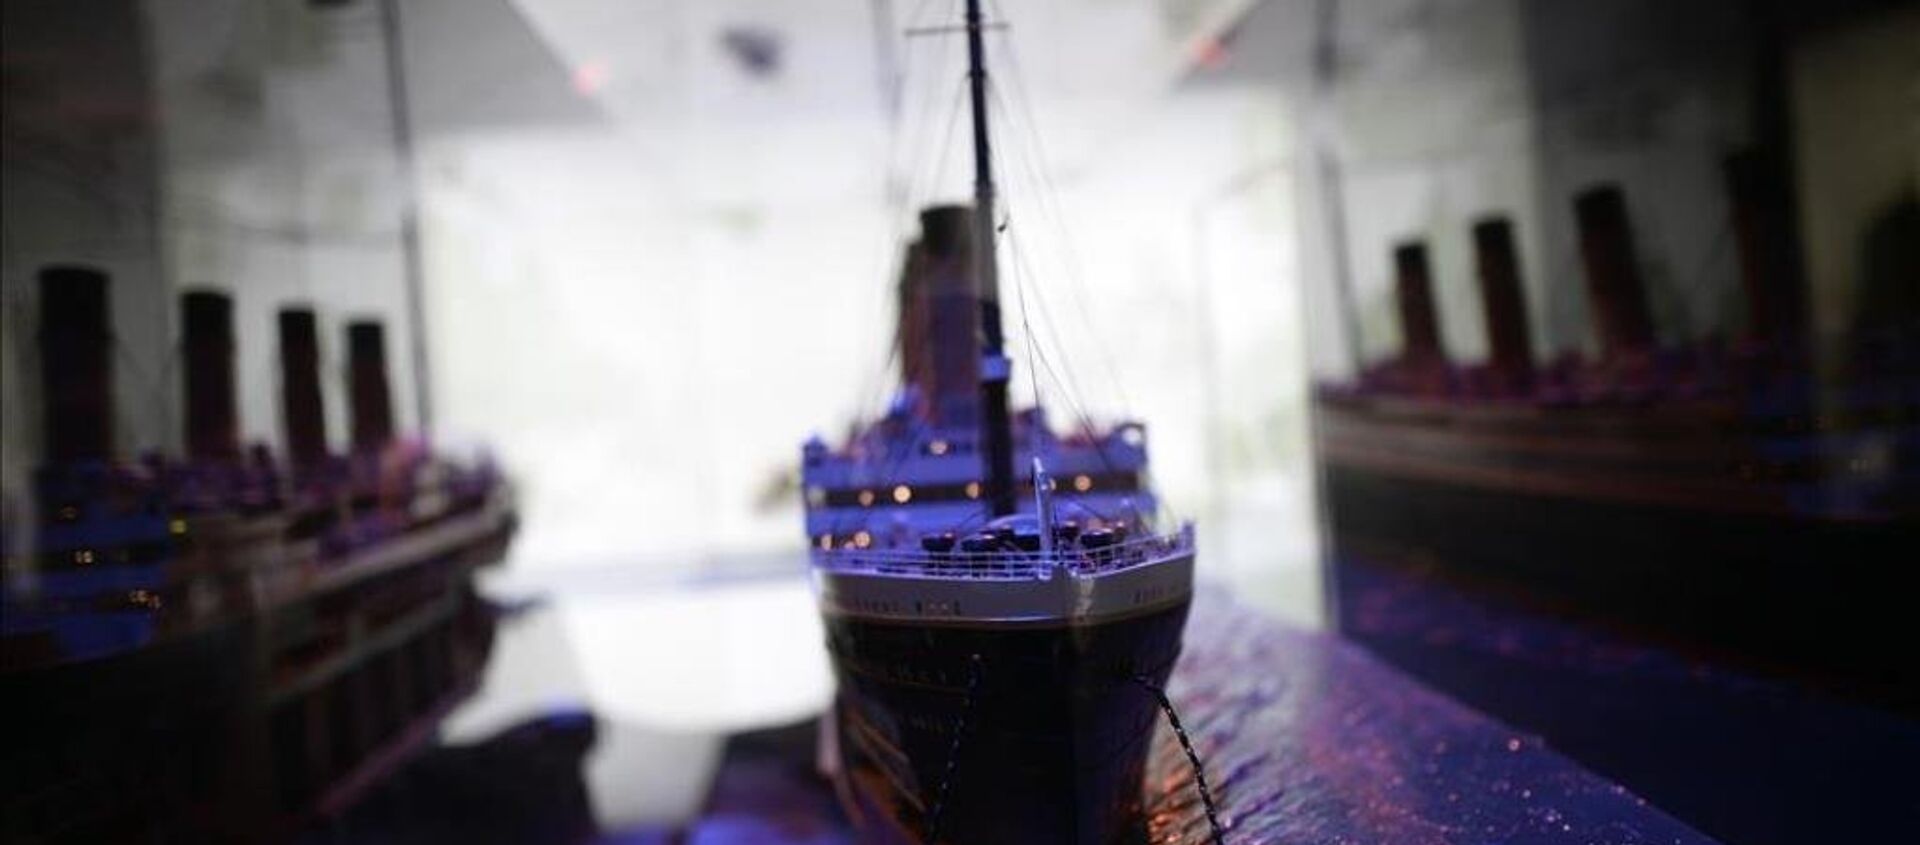 Titanic'in tarihi objeleri Madrid'de sergileniyor - Sputnik Türkiye, 1920, 06.10.2015